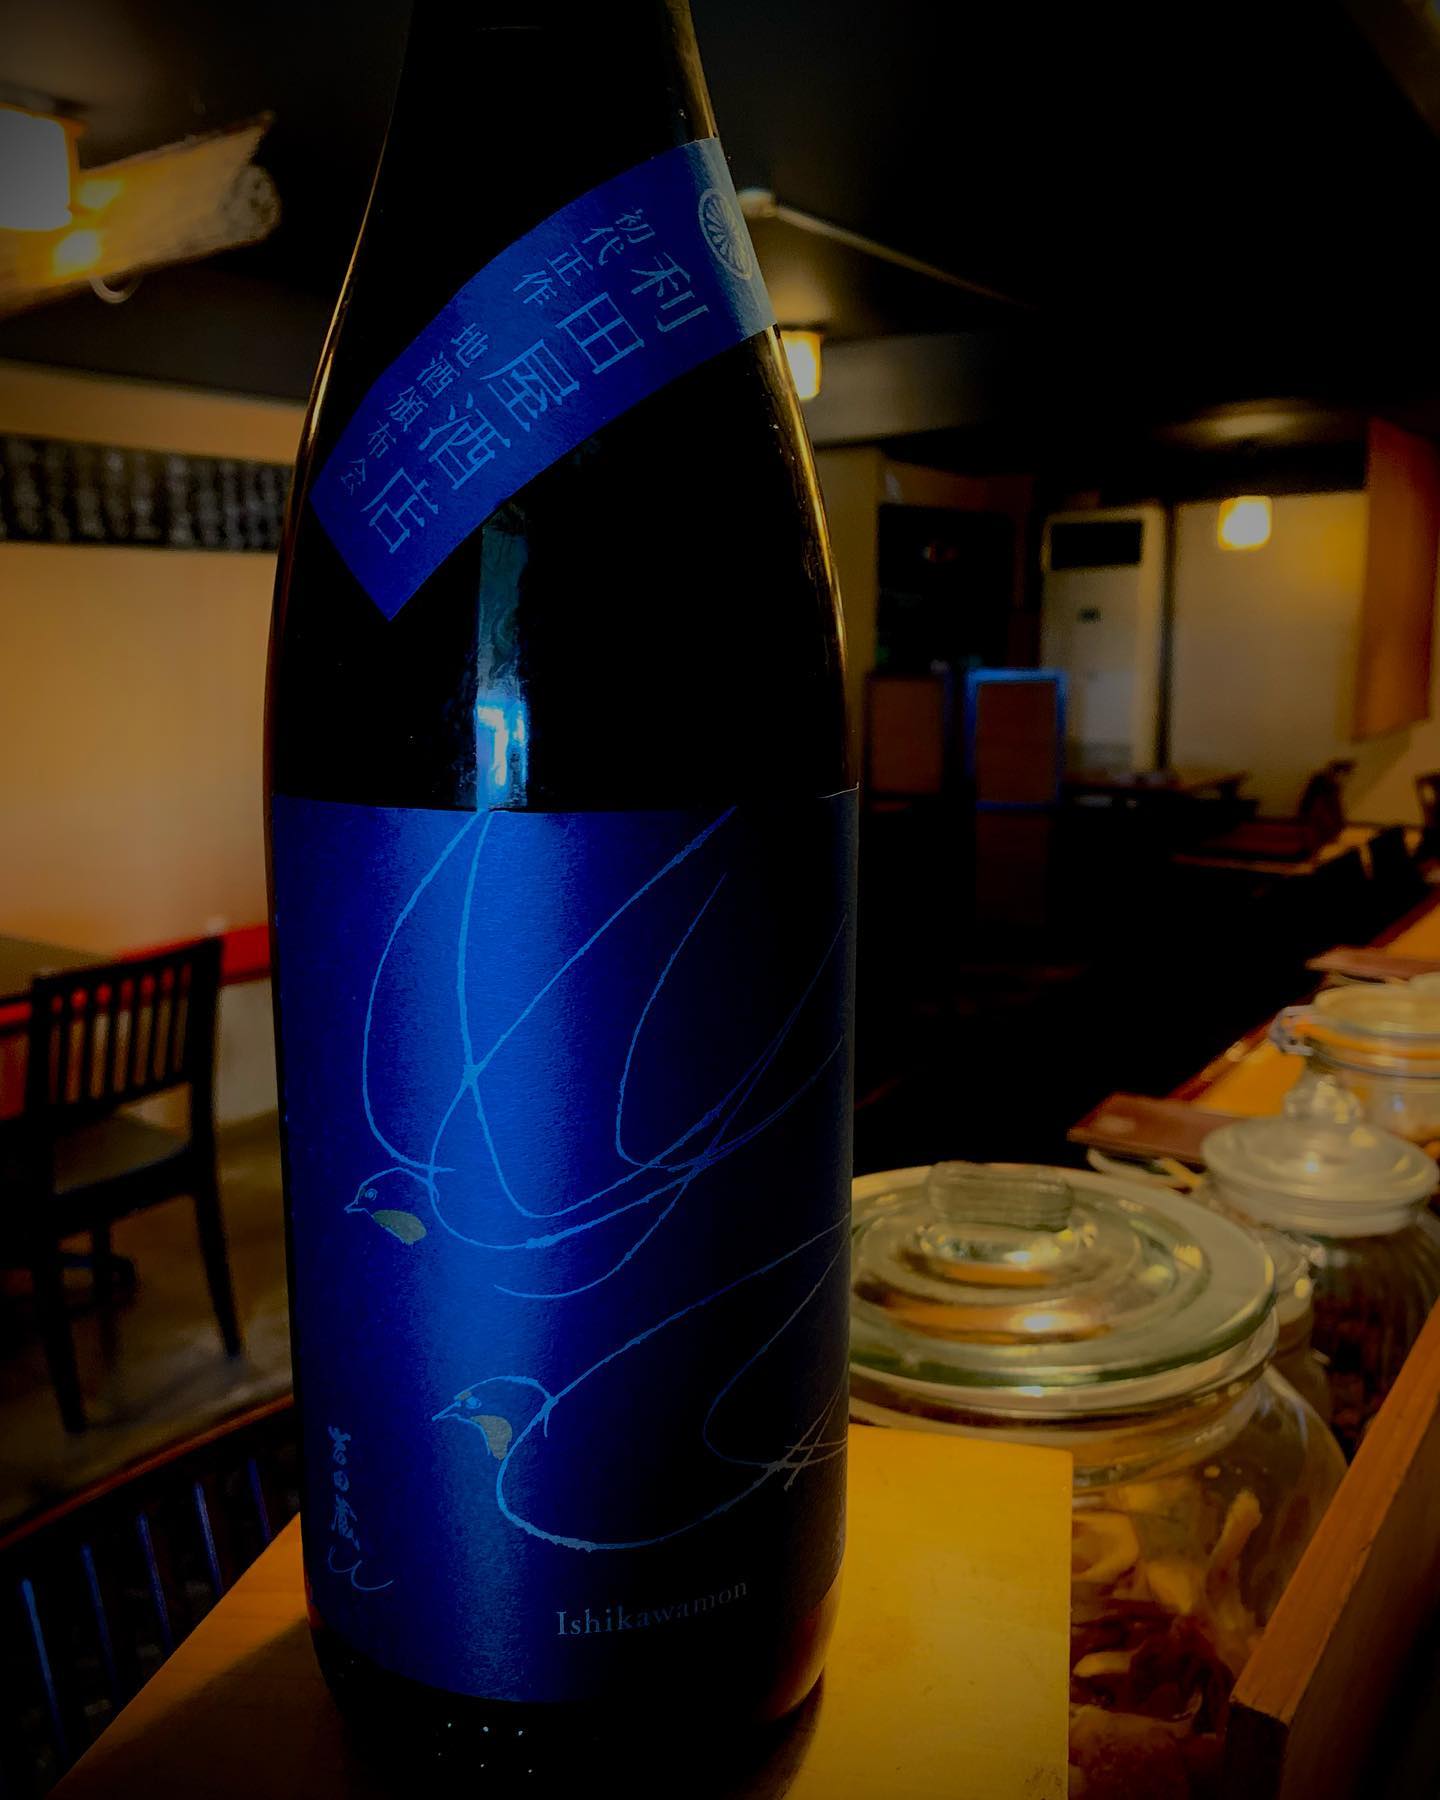 本日の日本酒紹介️
「吉田蔵」

特有の優しい甘みと爽やかな旨みを一体にして引き出しました。無濾過生原酒ならではのフレッシュさと発泡感をお楽しみください。
   #